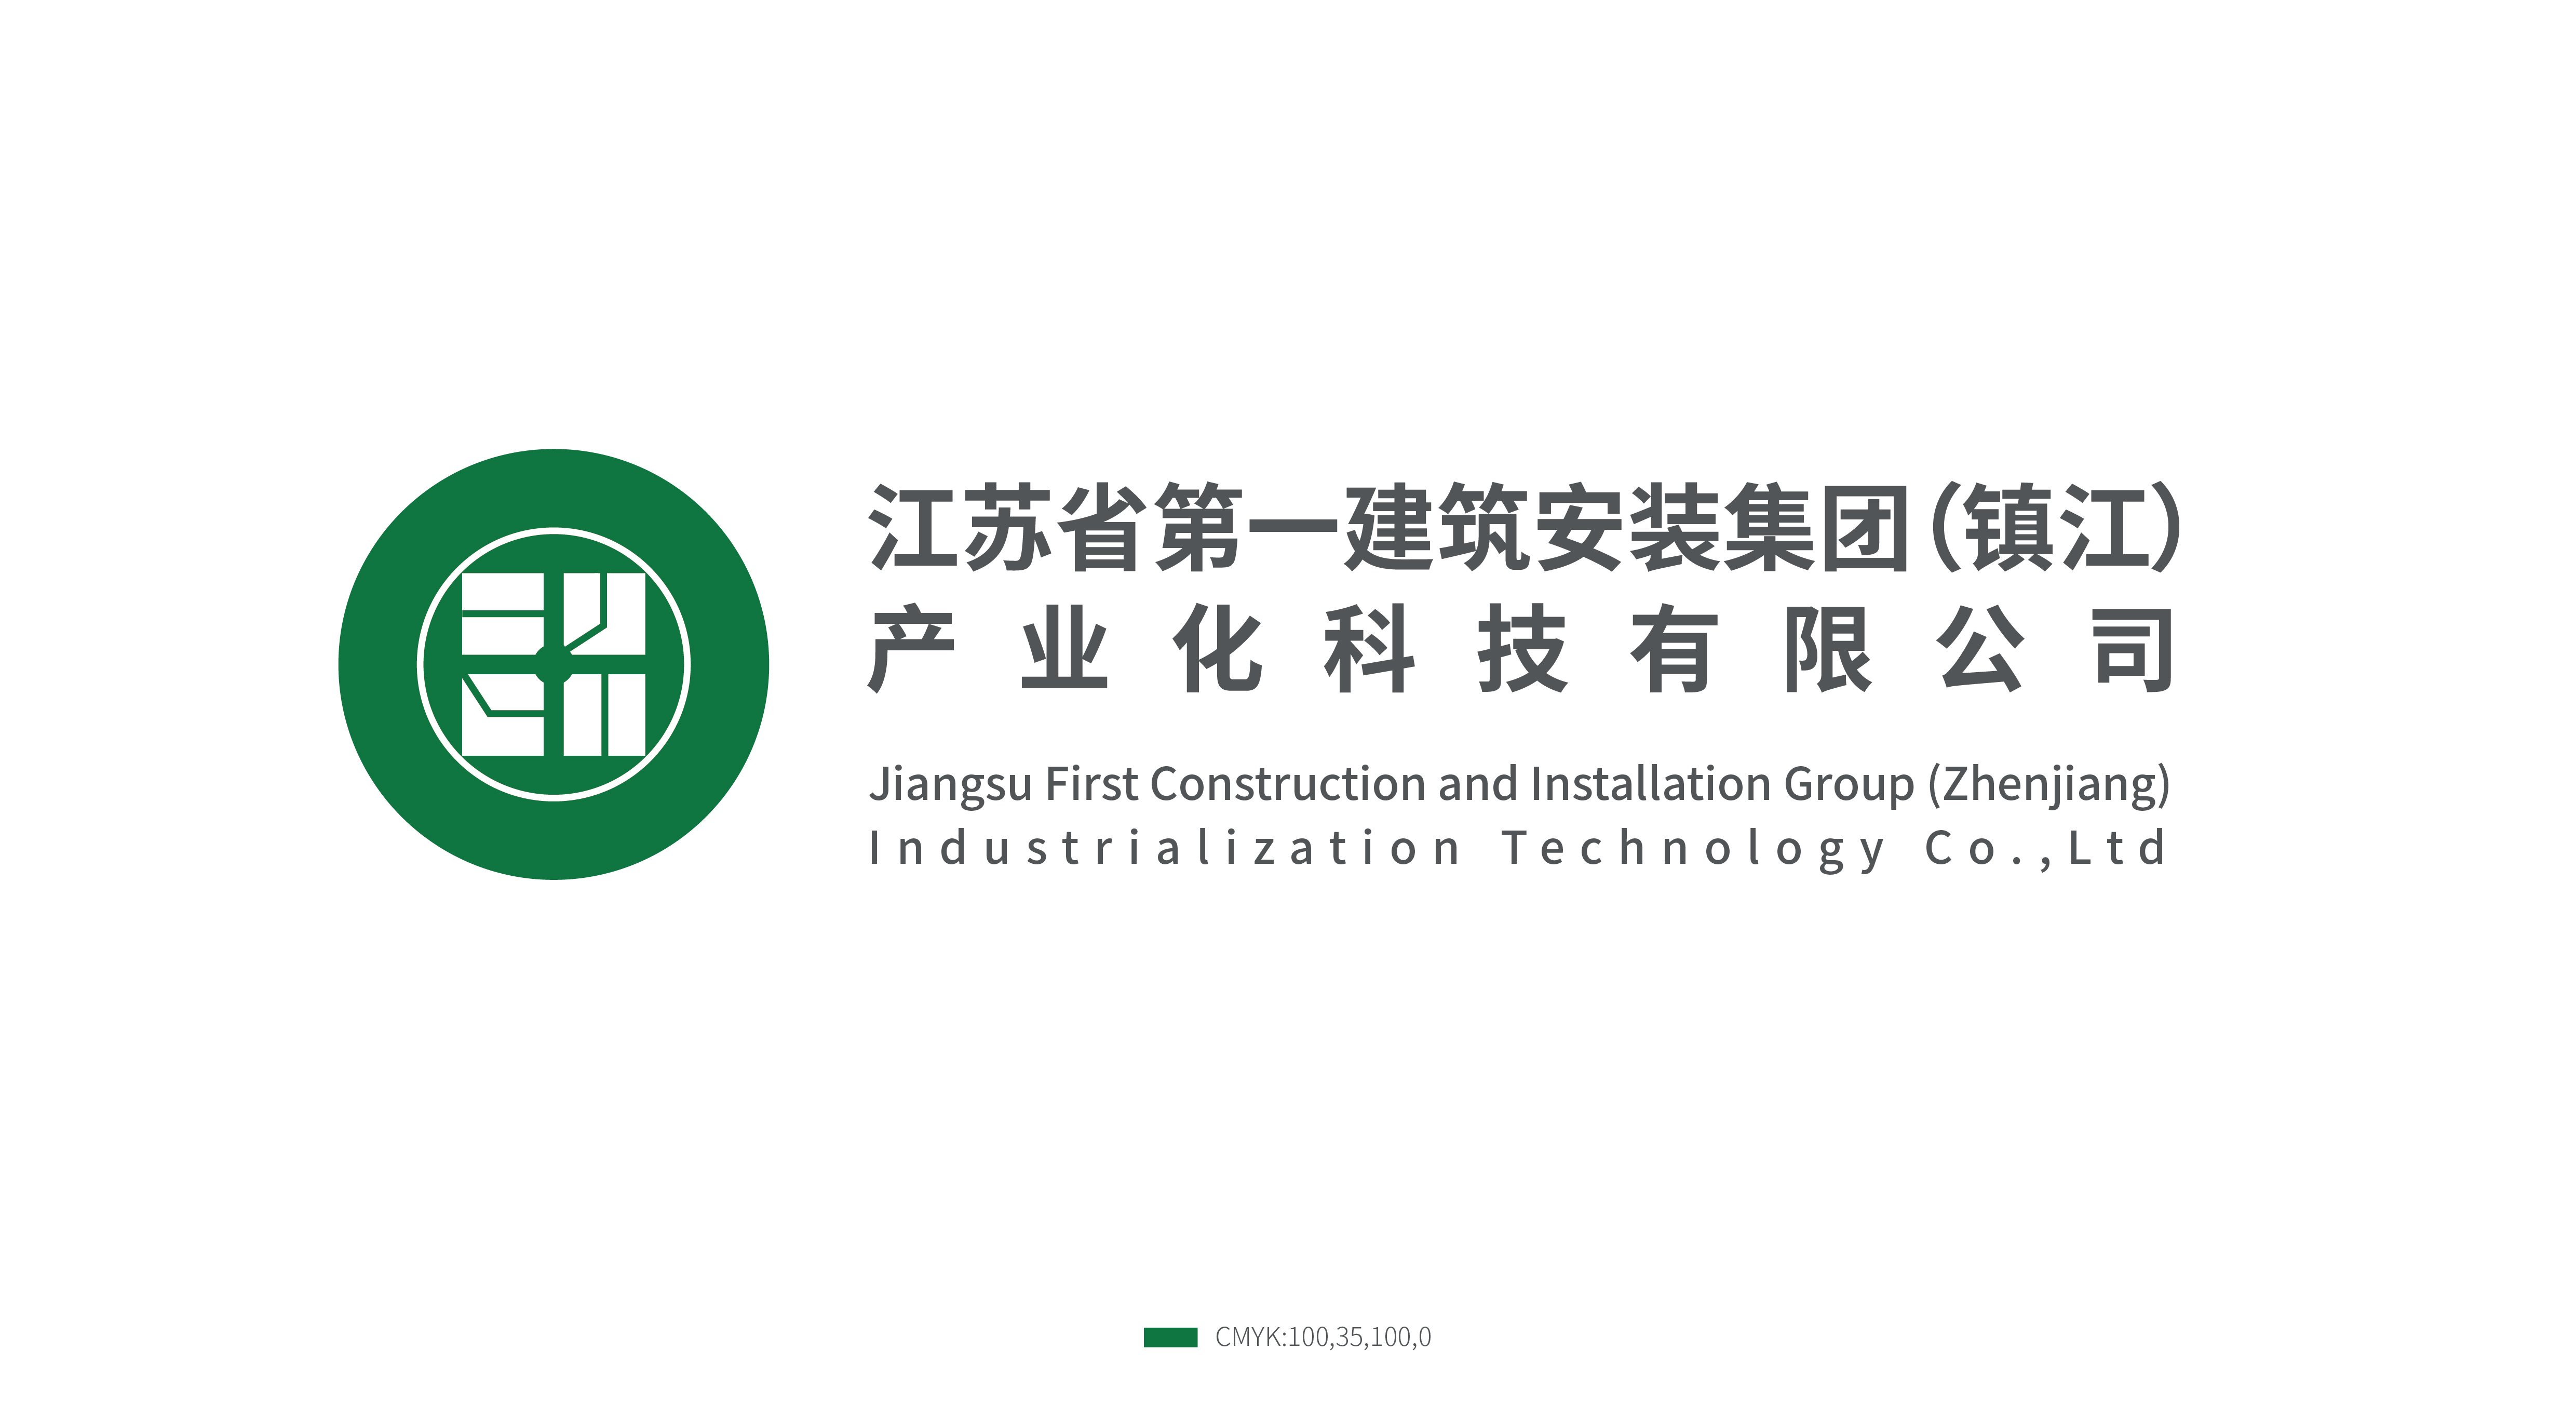 江苏省第一建筑安装集团（镇江）产业化科技有限公司